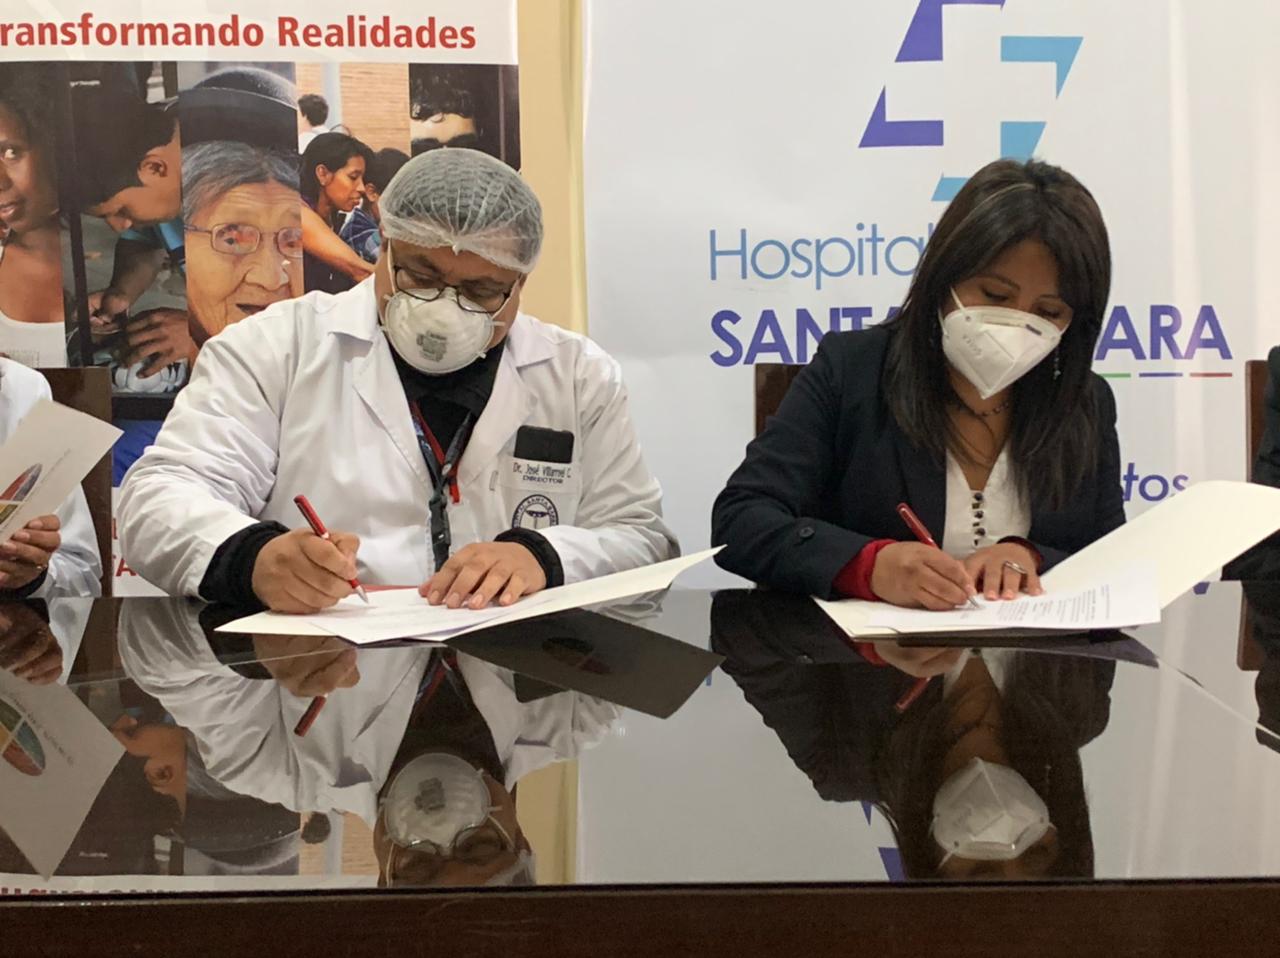 Defensoría del Pueblo capacitará y sensibilizará a personal del Hospital San Bárbara de Sucre para un mejor trato a pacientes